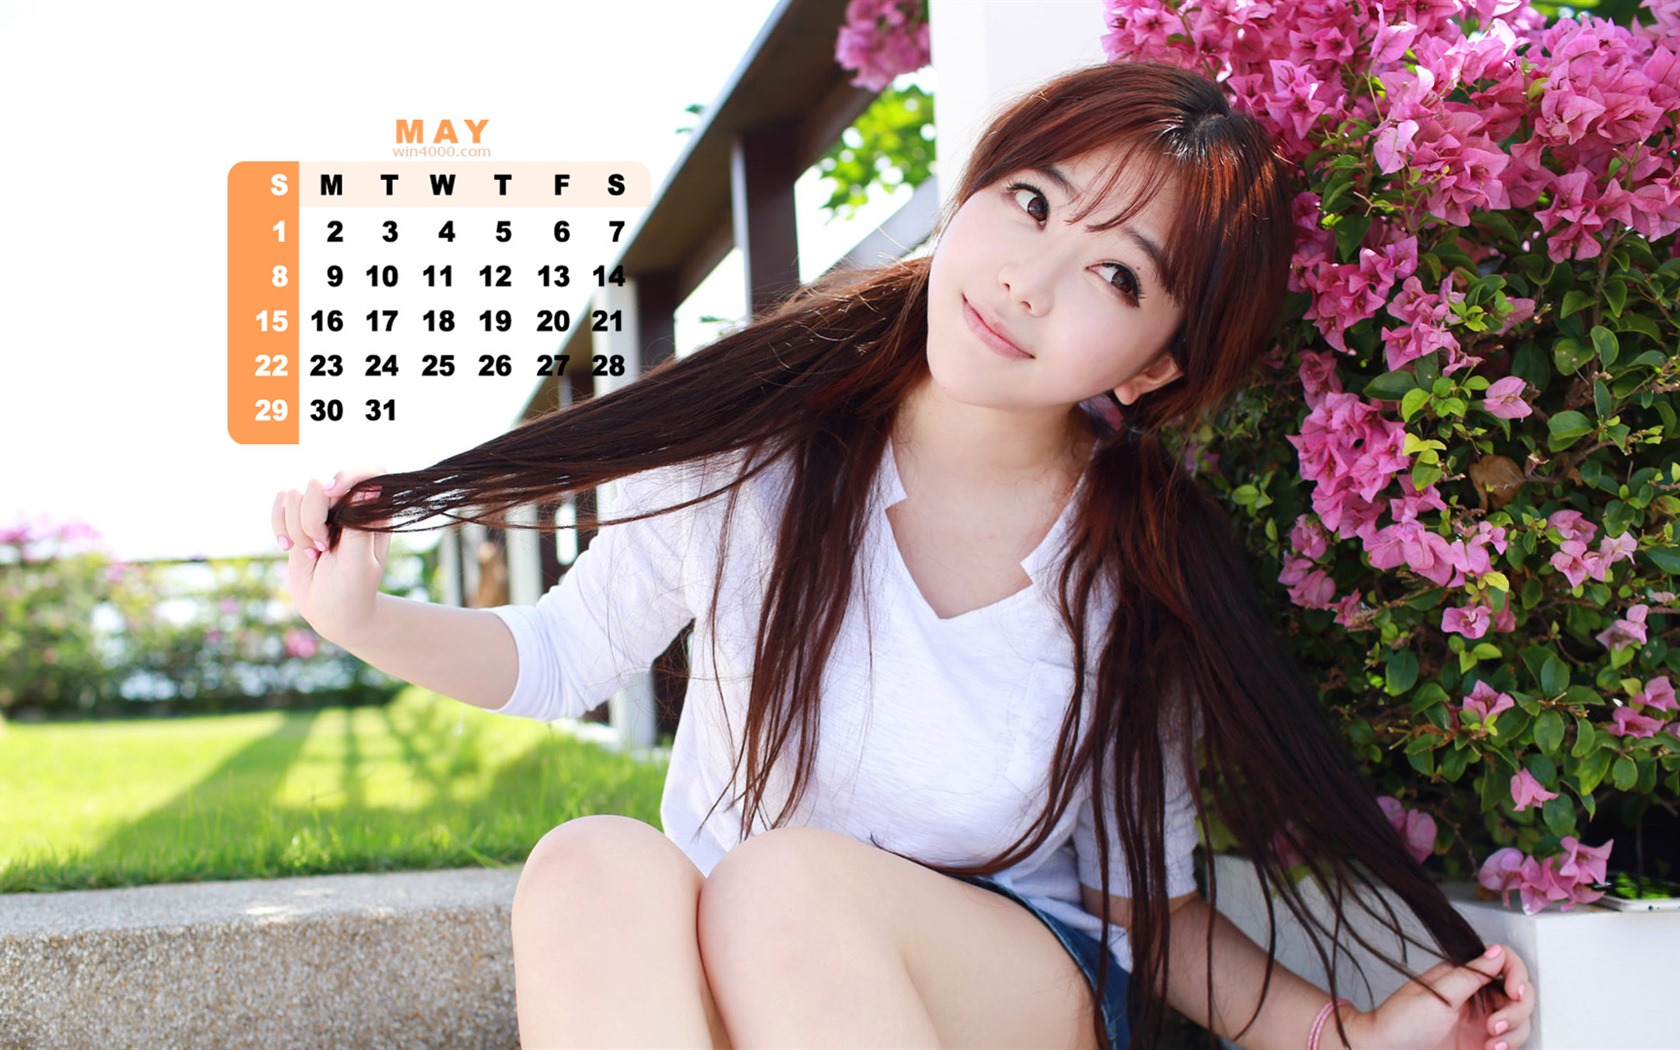 Май 2016 календарь обои (2) #2 - 1680x1050